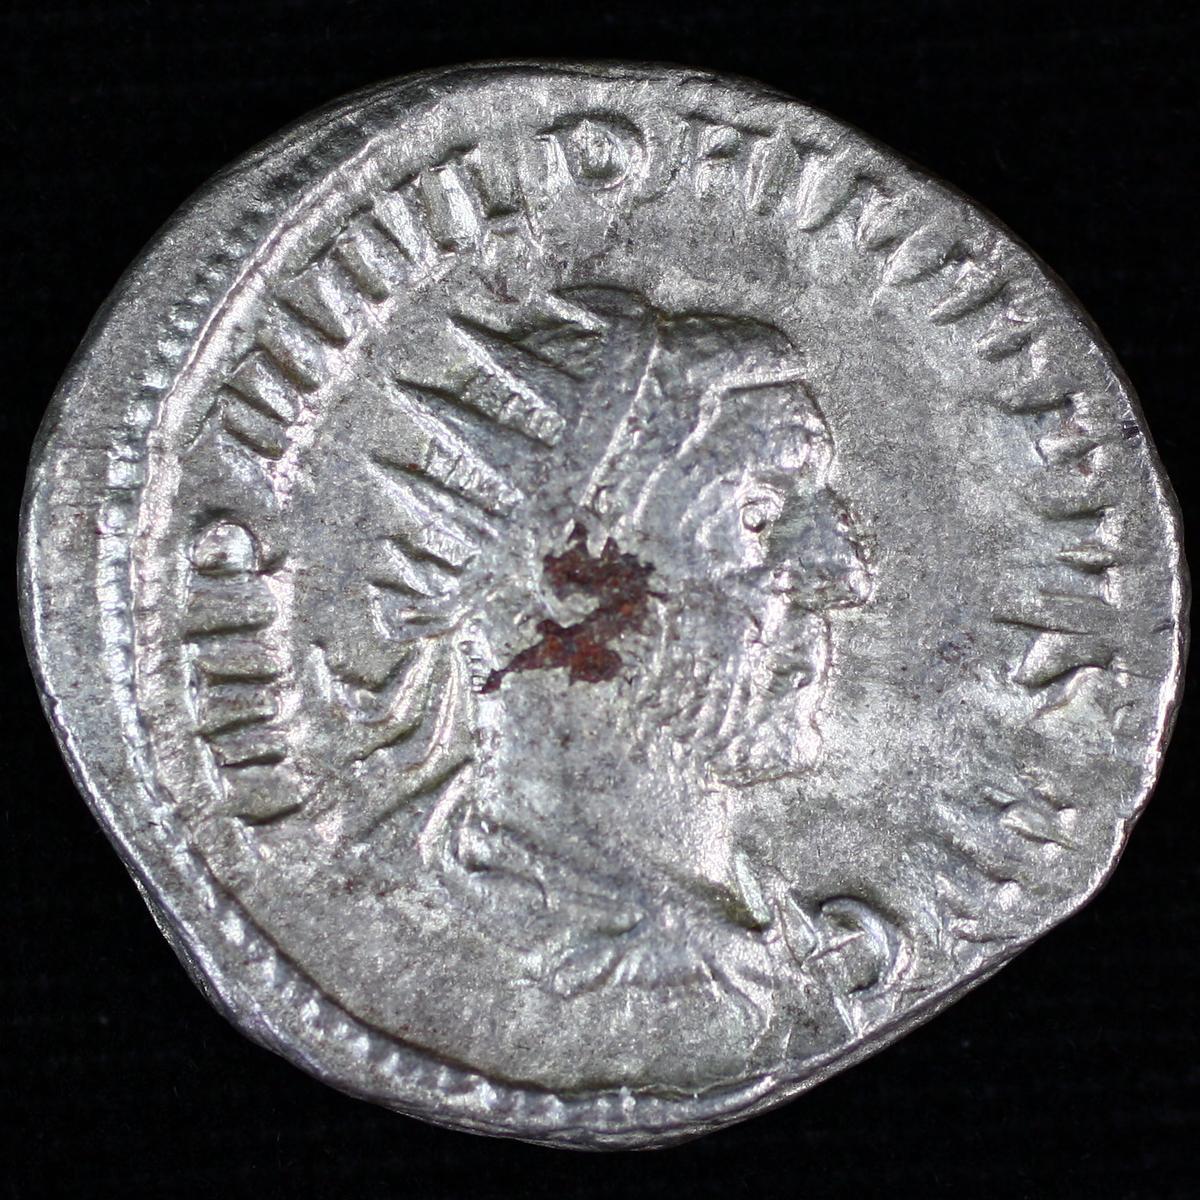 Ancient Rome Philip I silver denarius